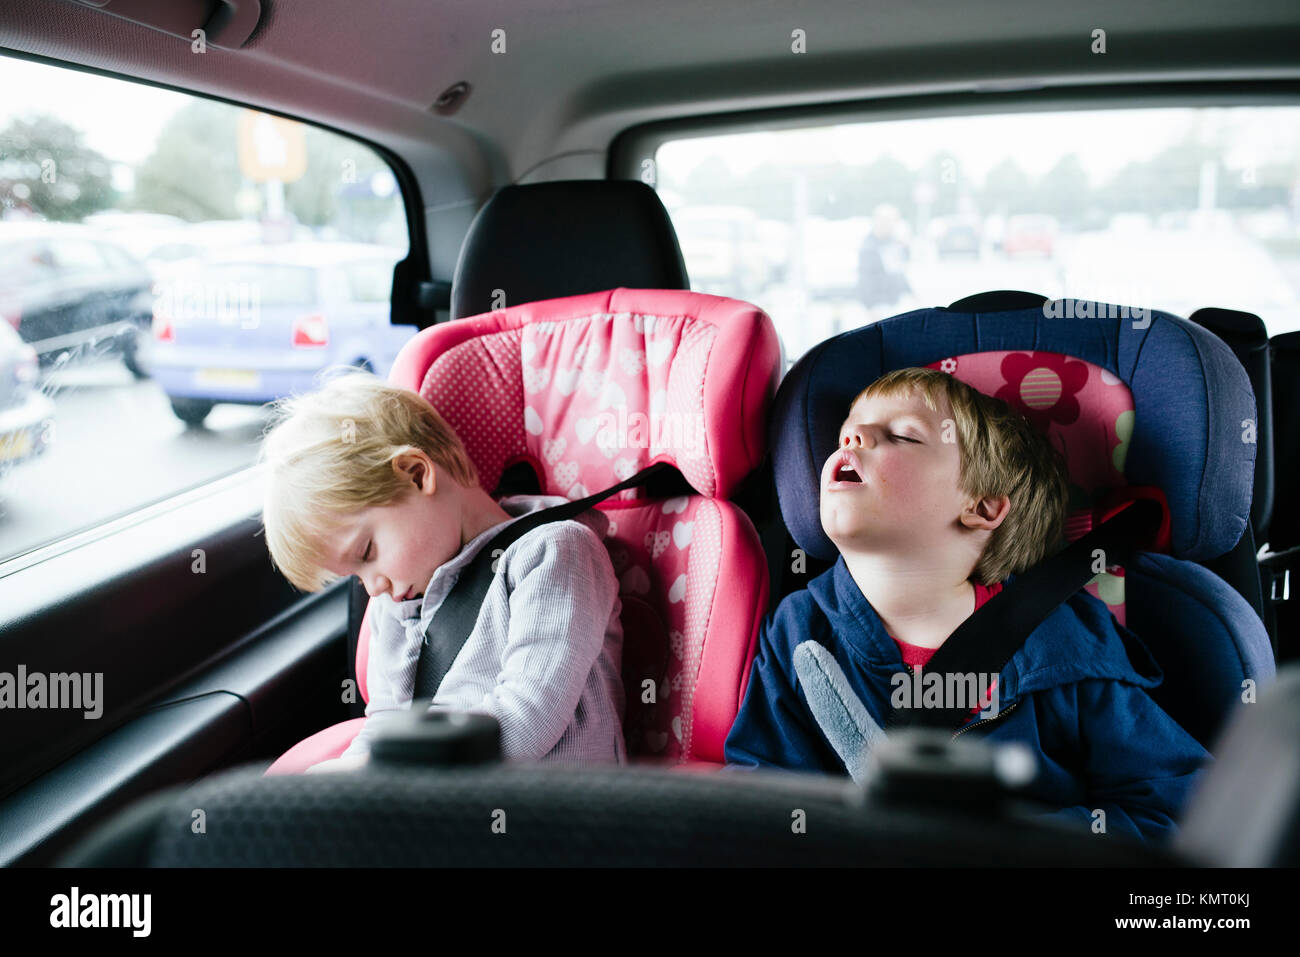 Müde Brüder im Auto schlafen Stockfotografie - Alamy